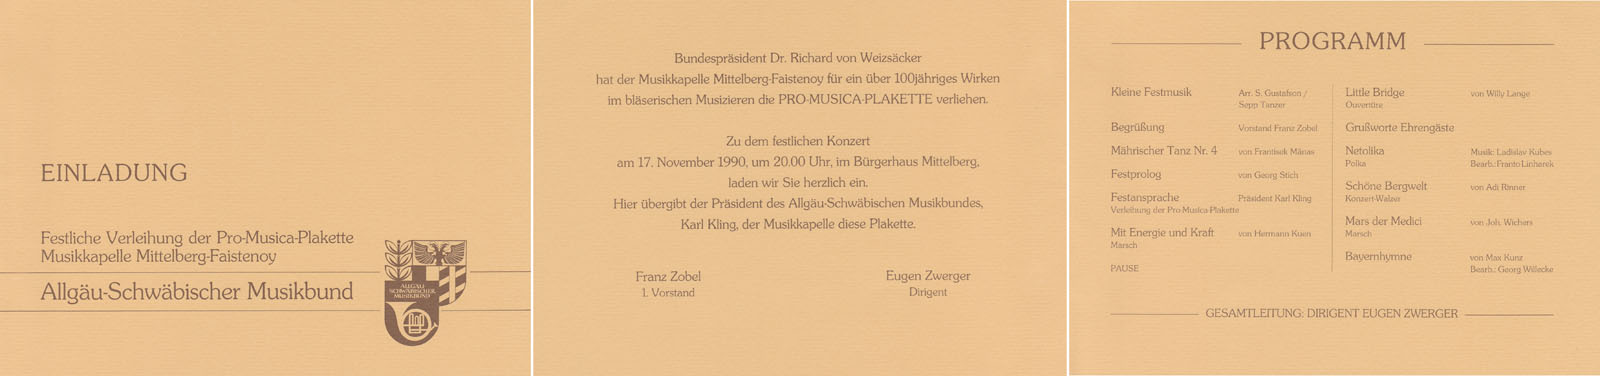 Aus der Chronik der Musikkapelle Mittelberg-Faistenoy - 1990 Verleihung der Pro-Musica-Plakette